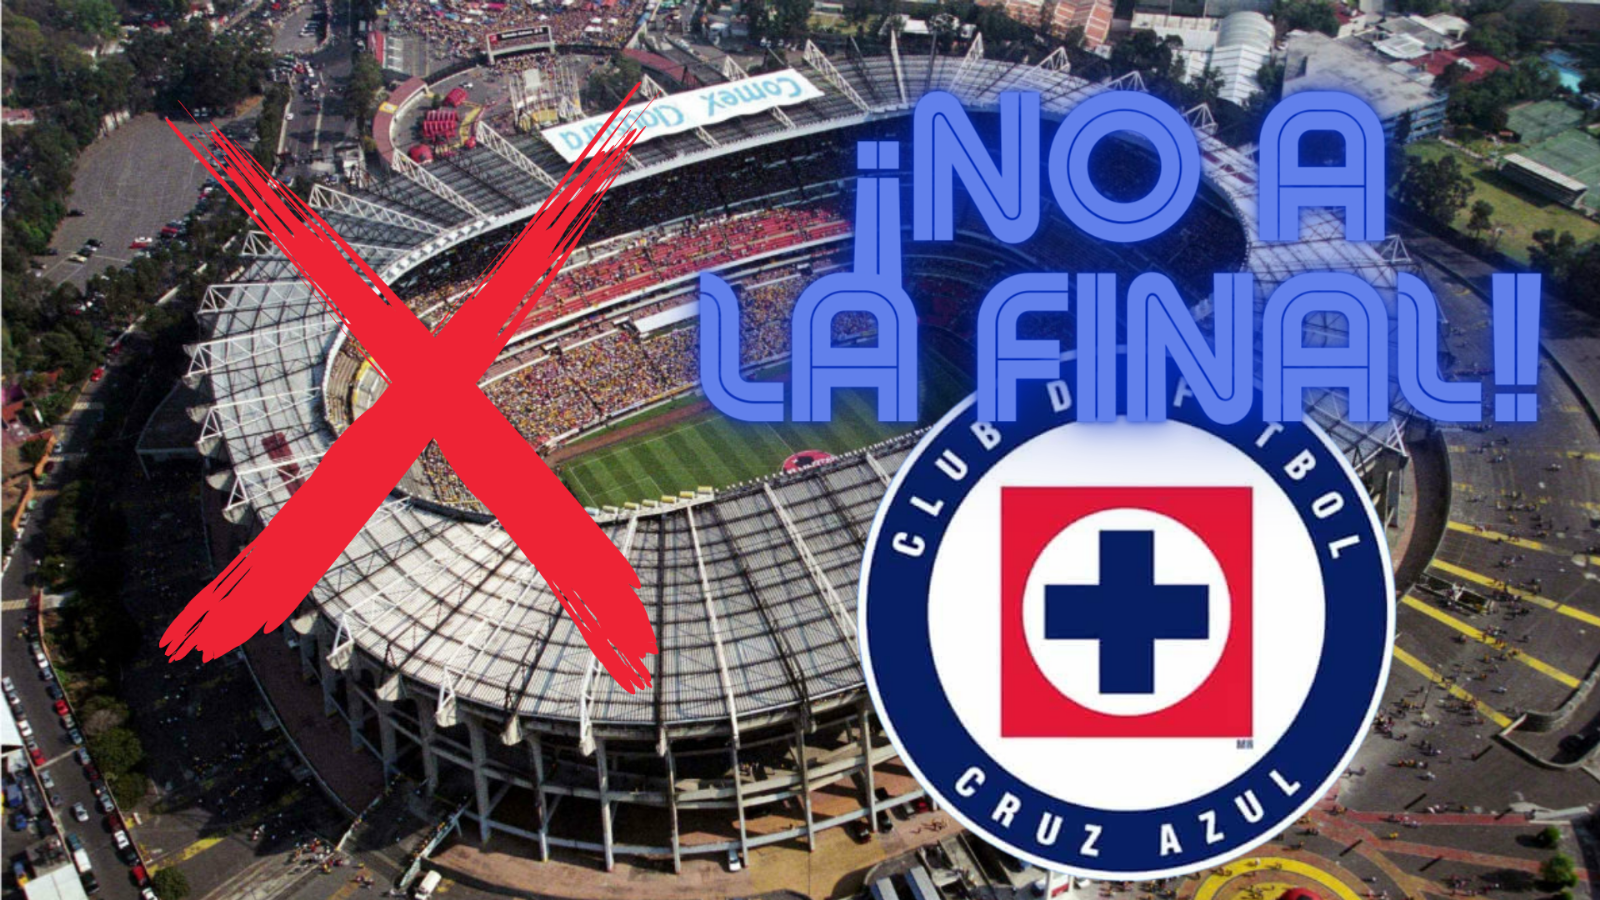 Las RAZONES por las que Cruz Azul decidió NO JUGAR LA FINAL de ida en Estadio Azteca